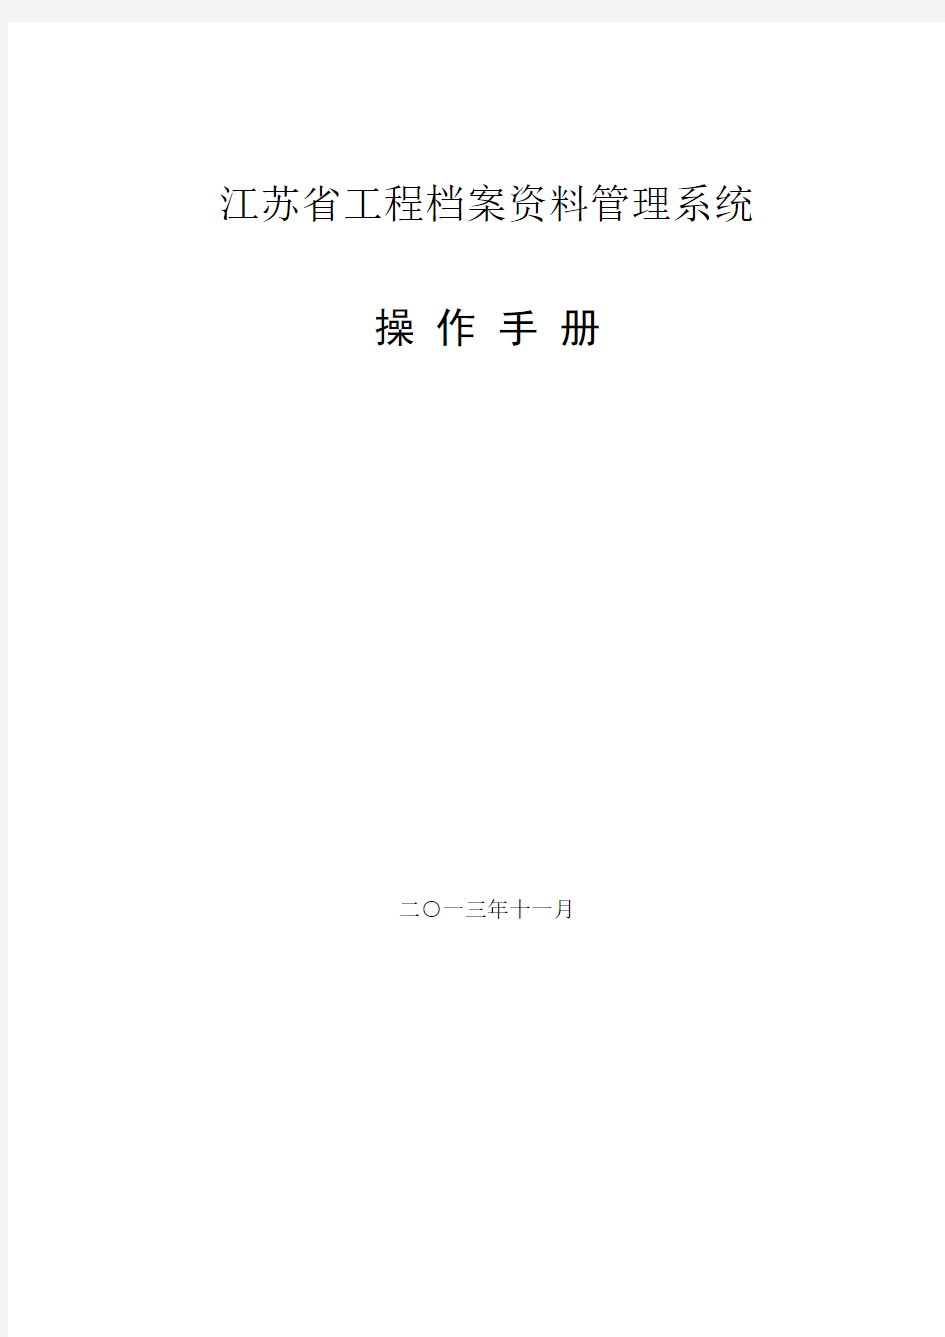 最新江苏建筑行业资料员资料系统使用手册